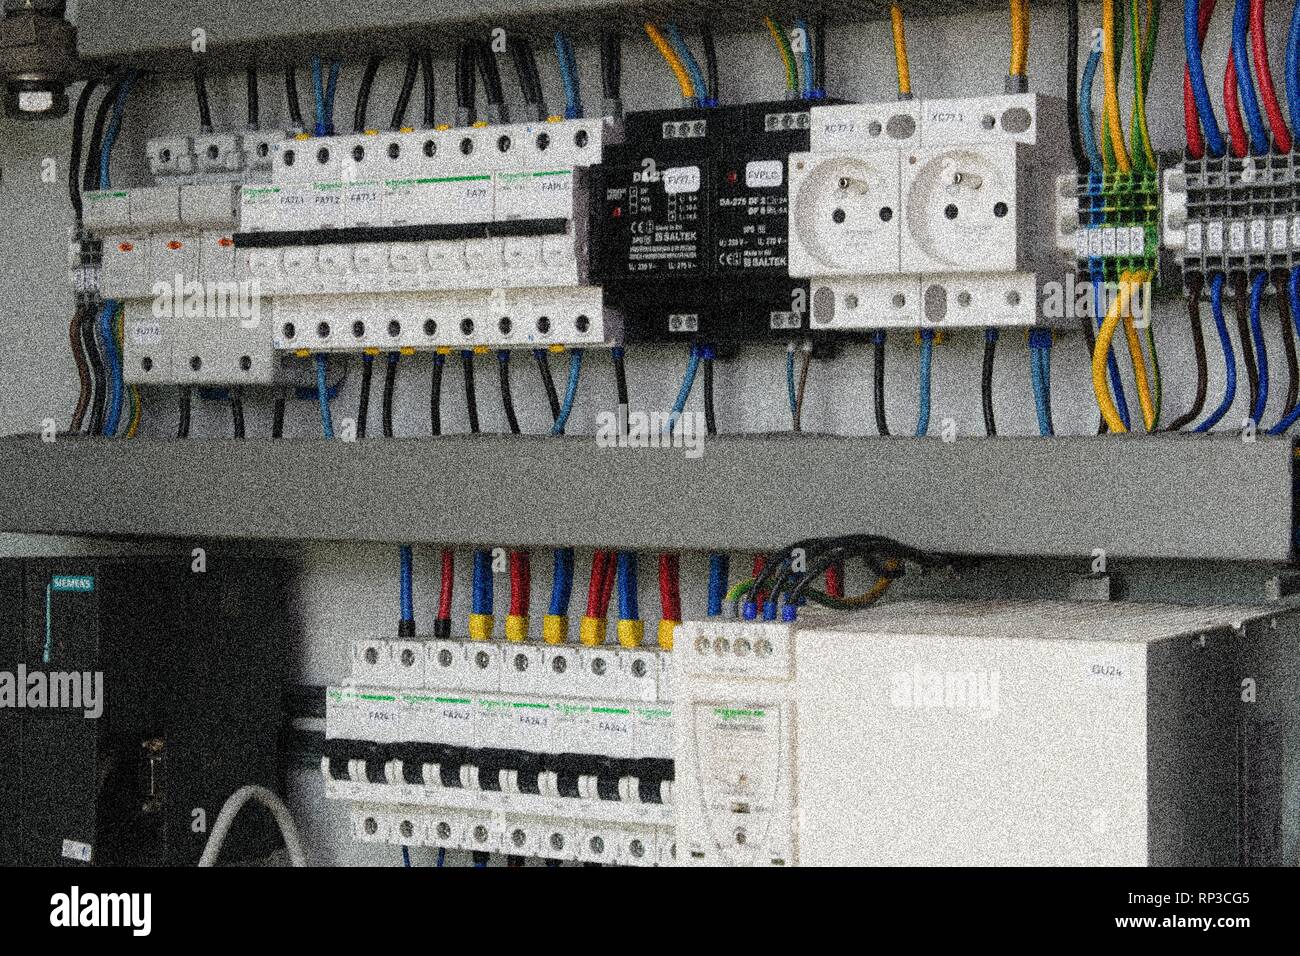 Stromkreis Schalter und Steckdosen in einem elektrischen Schaltschrank.  Hinzufügen Filmkorn Wirkung Stockfotografie - Alamy